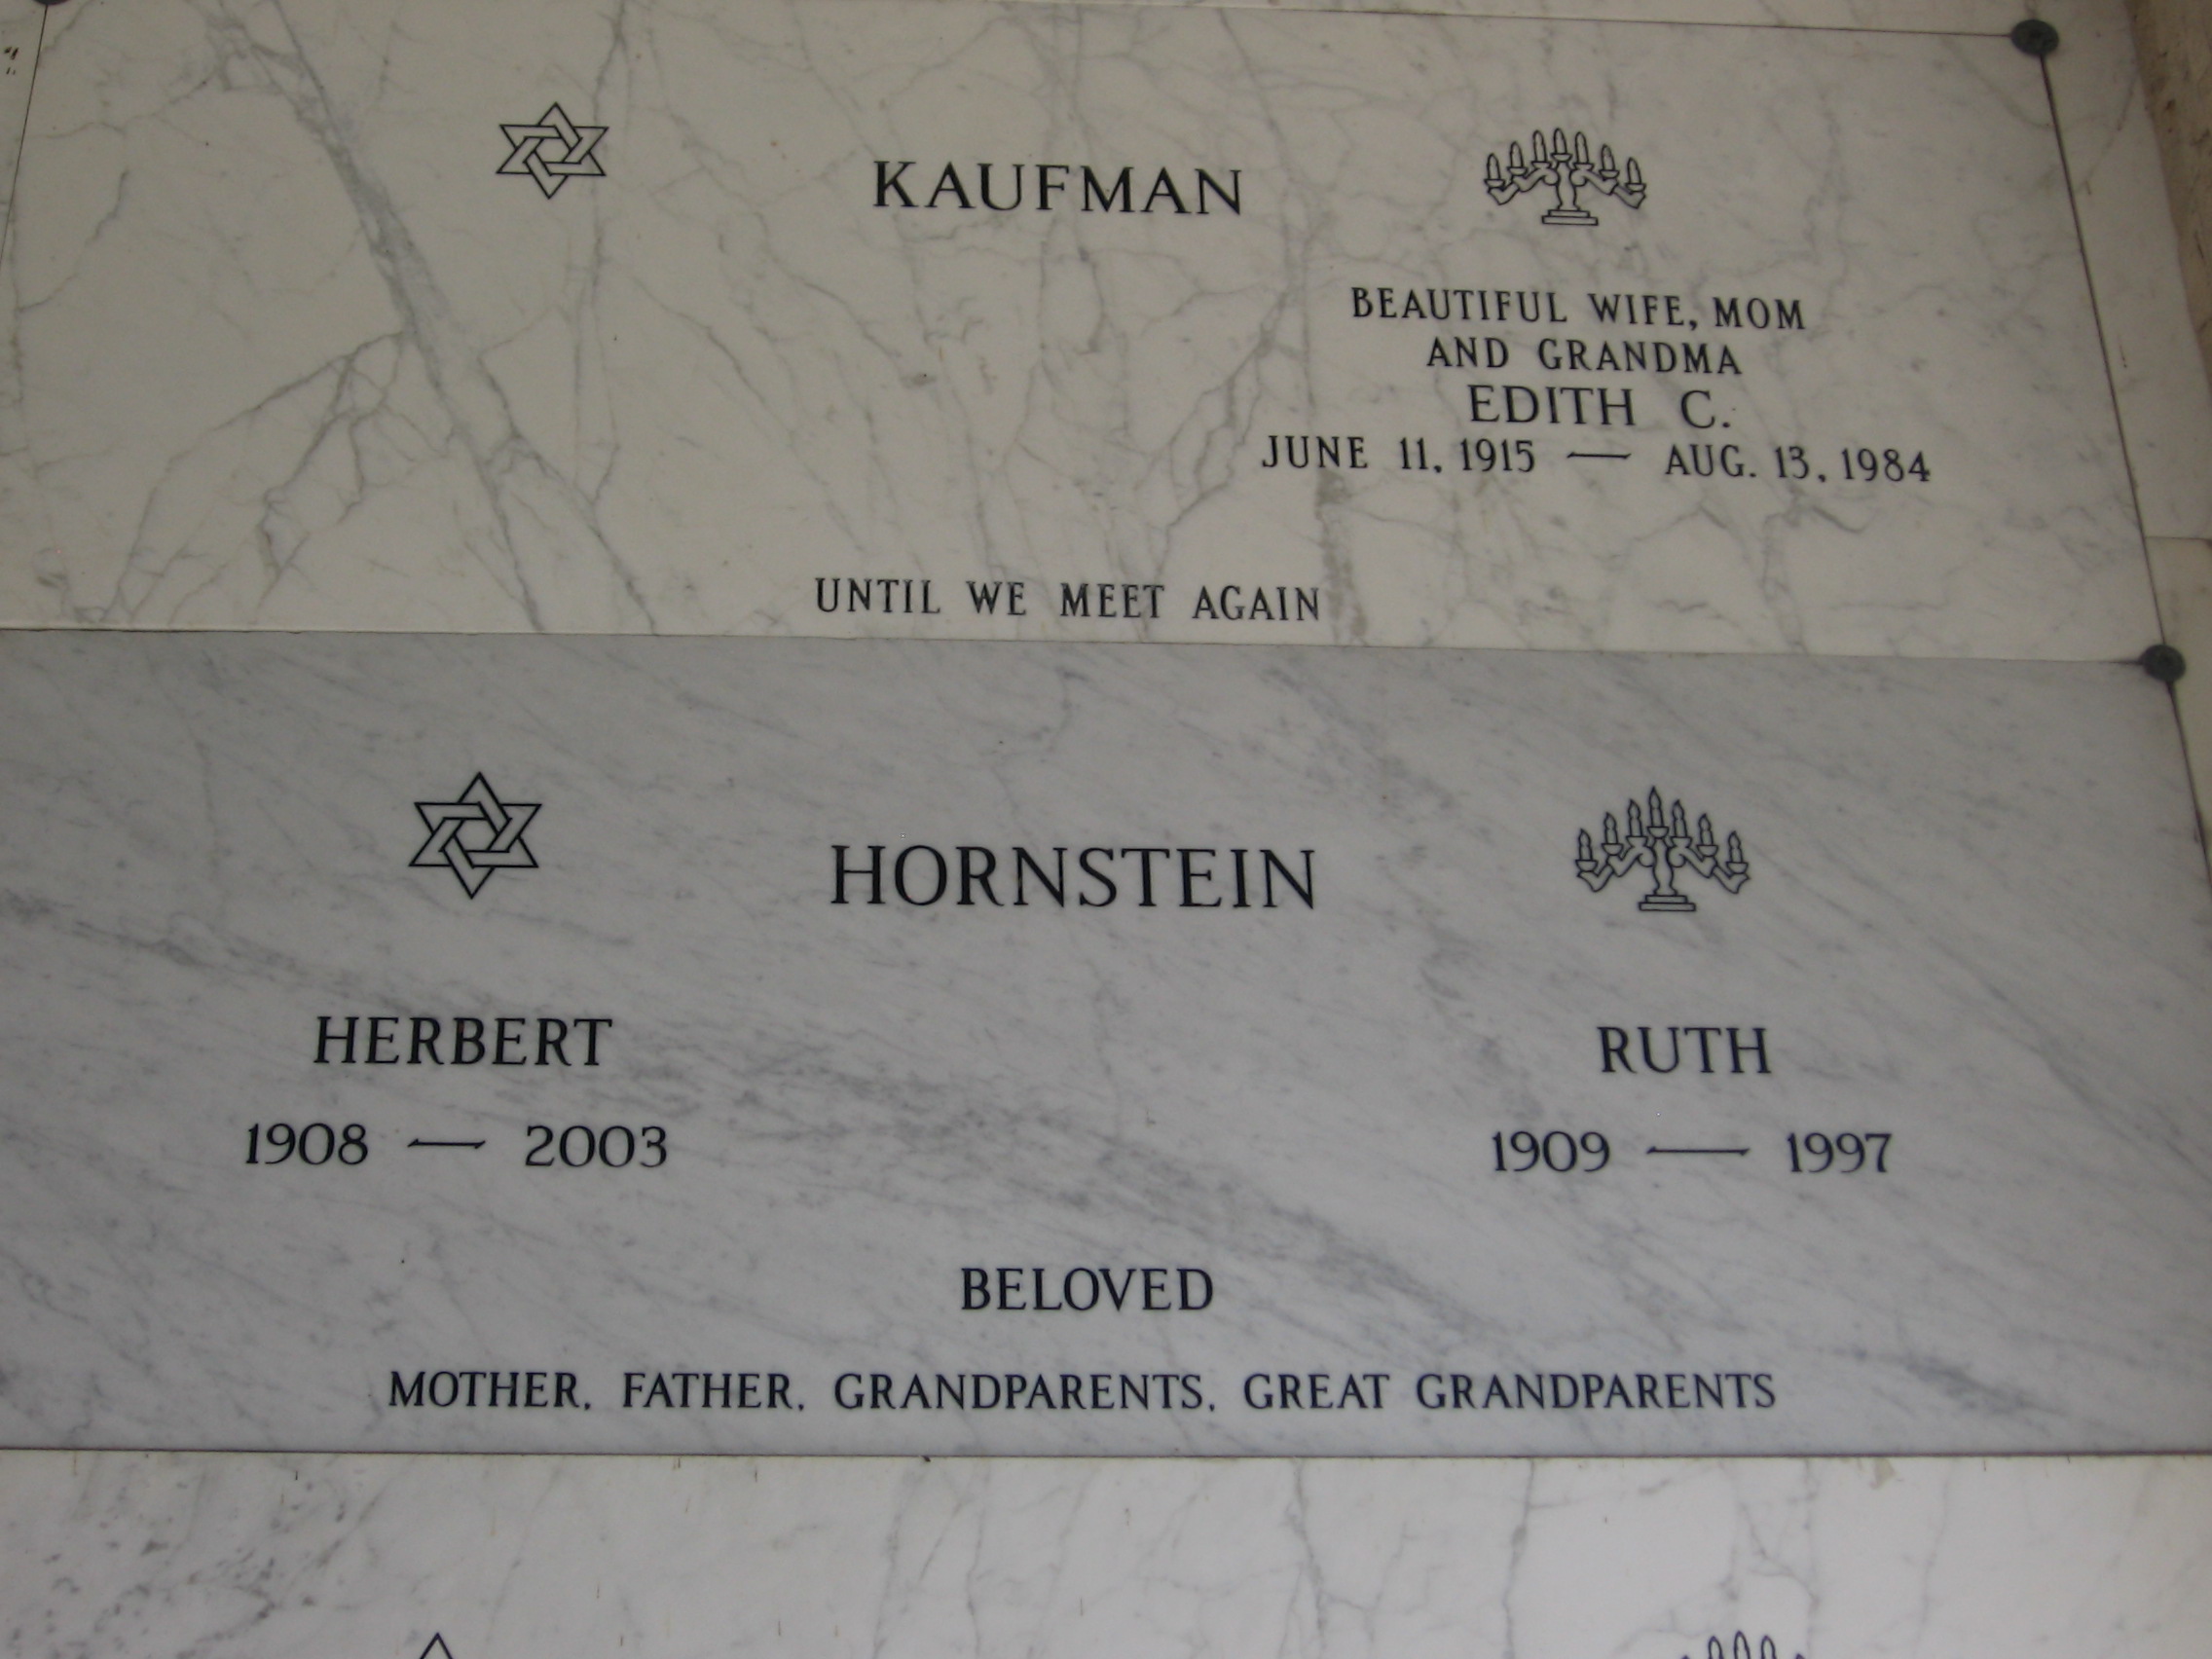 Ruth Hornstein